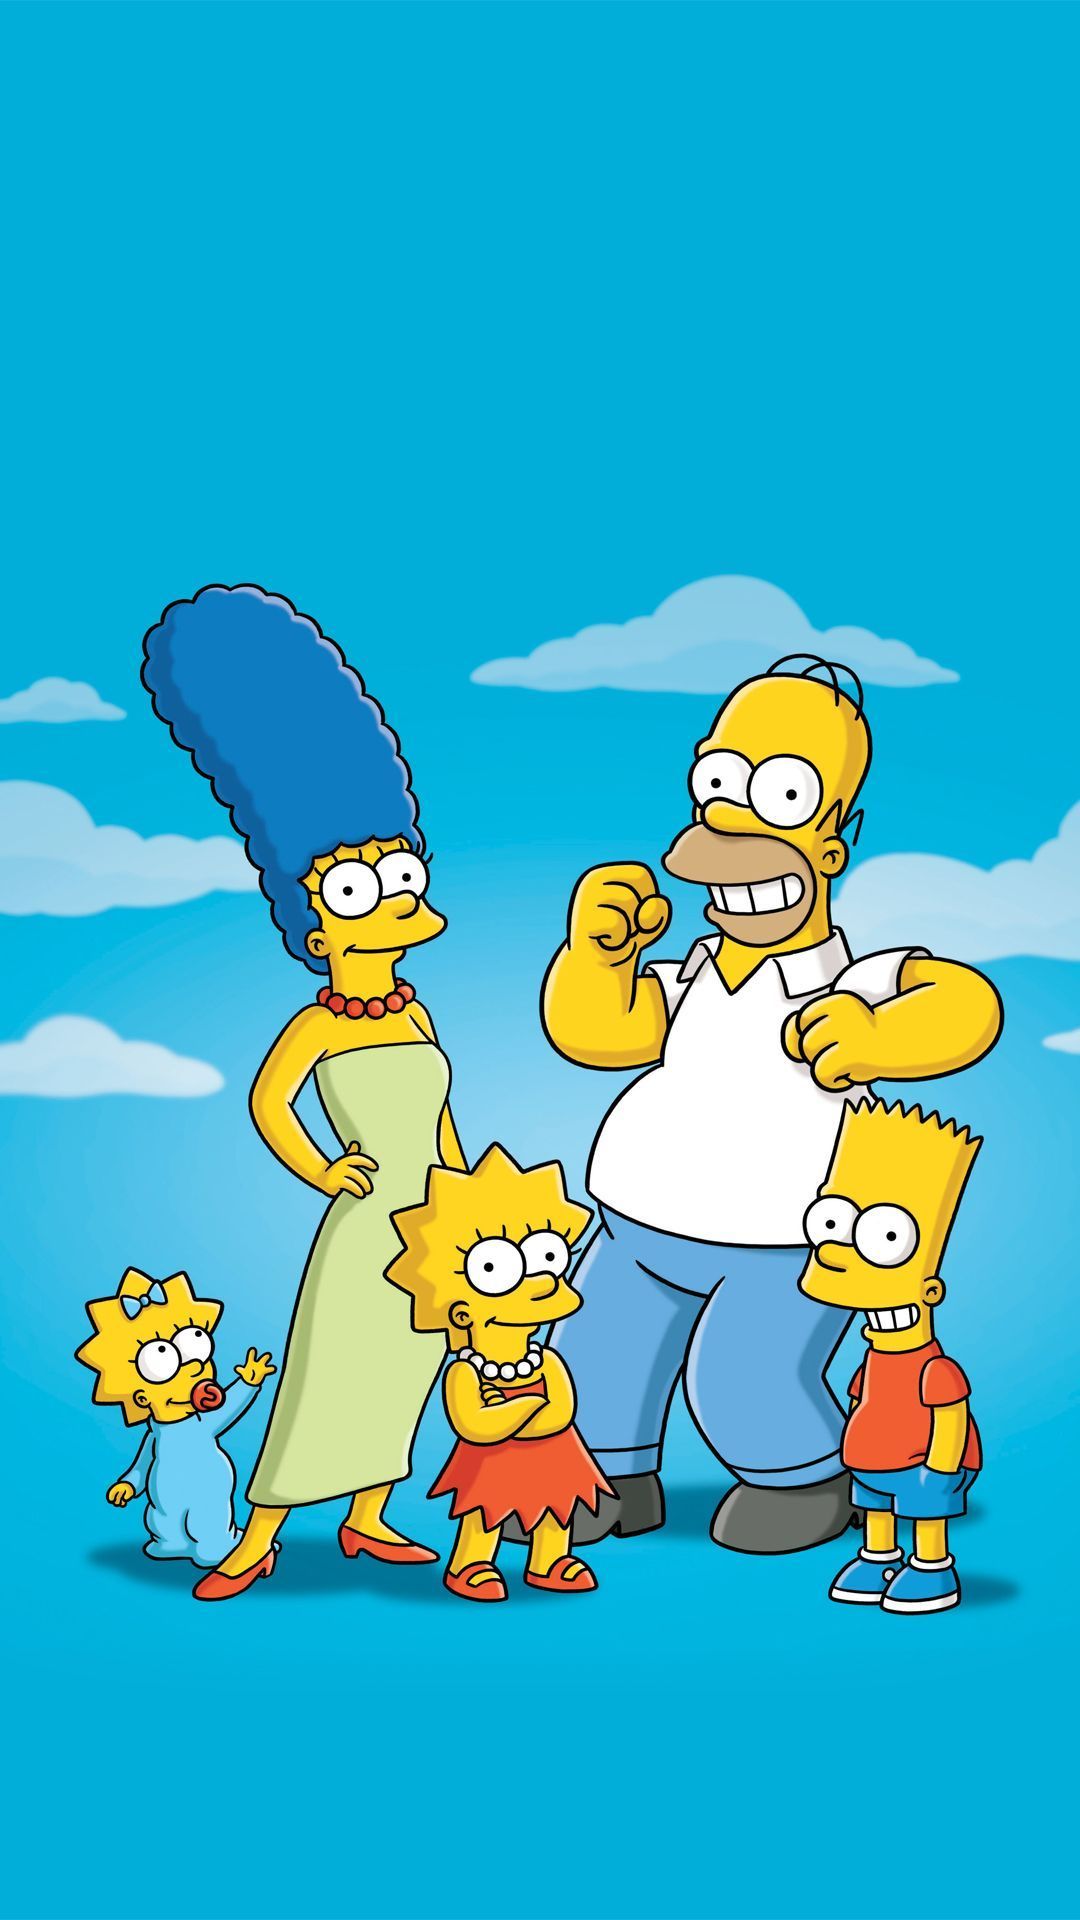 Simpson Family Wallpaper Free Simpson Family Background